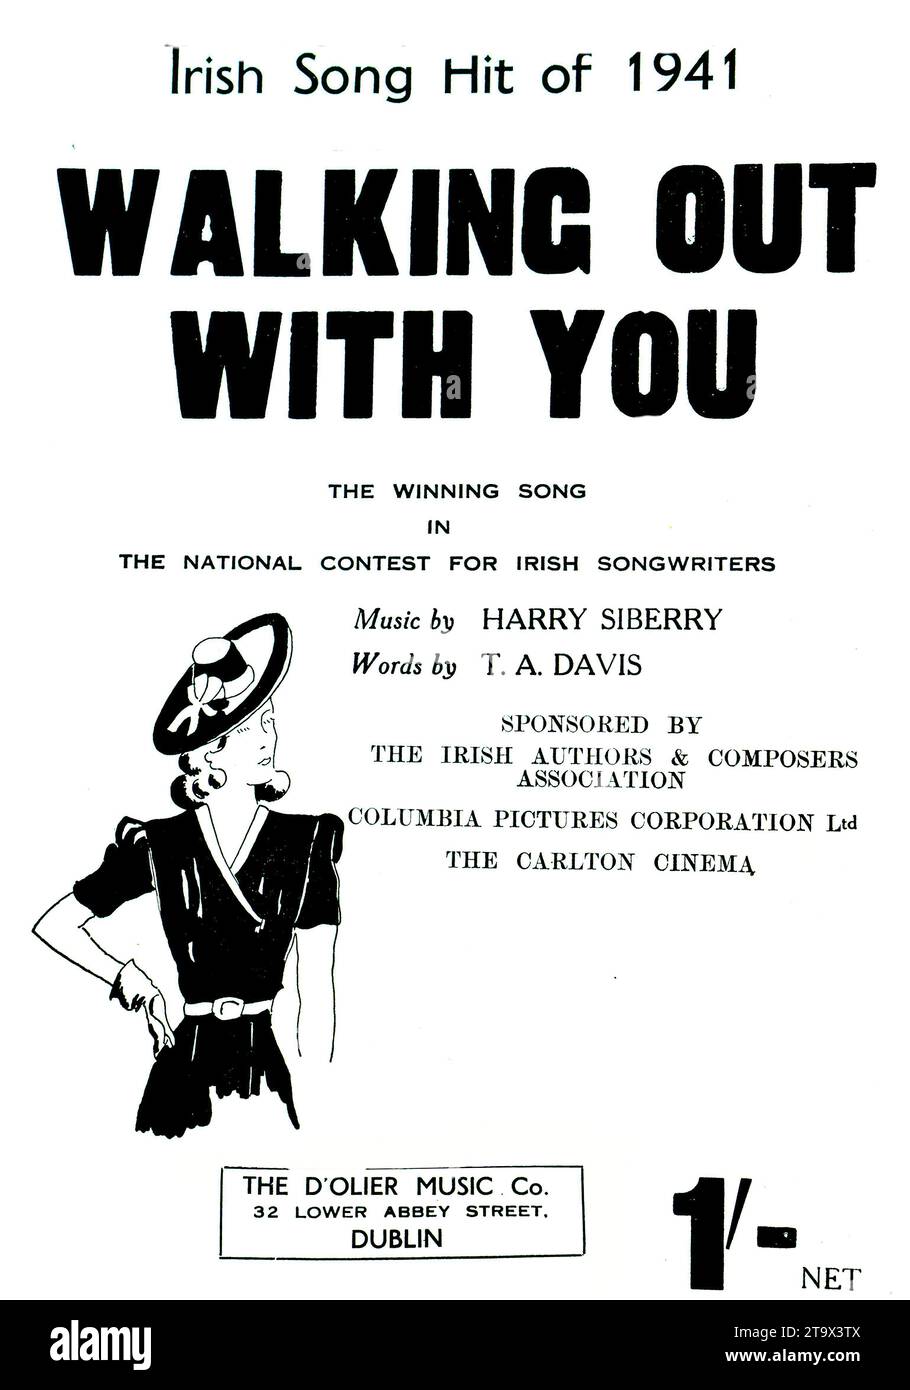 Notencover des irischen Hits „Walking Out With You“ aus dem Jahr 1941, Gewinner eines nationalen Songwriting-Wettbewerbs, mit Musik von Harry Siberry und Texten von T.A. Davis mit ikonischem Vintage-Design. Nur Bild. Stockfoto